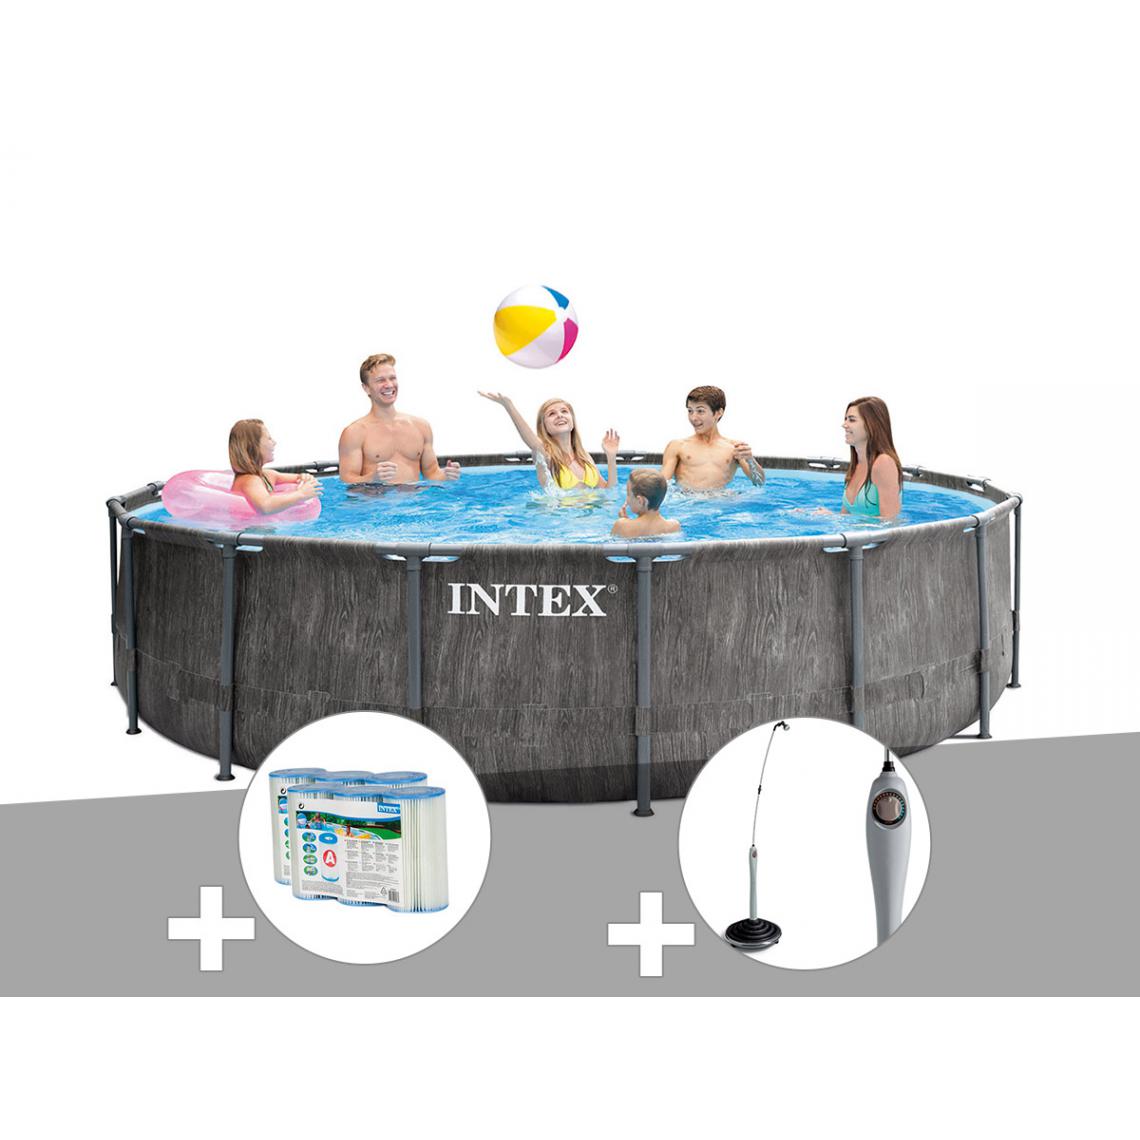 Intex - Kit piscine tubulaire Intex Baltik ronde 5,49 x 1,22 m + 6 cartouches de filtration + Douche solaire - Piscine Tubulaire